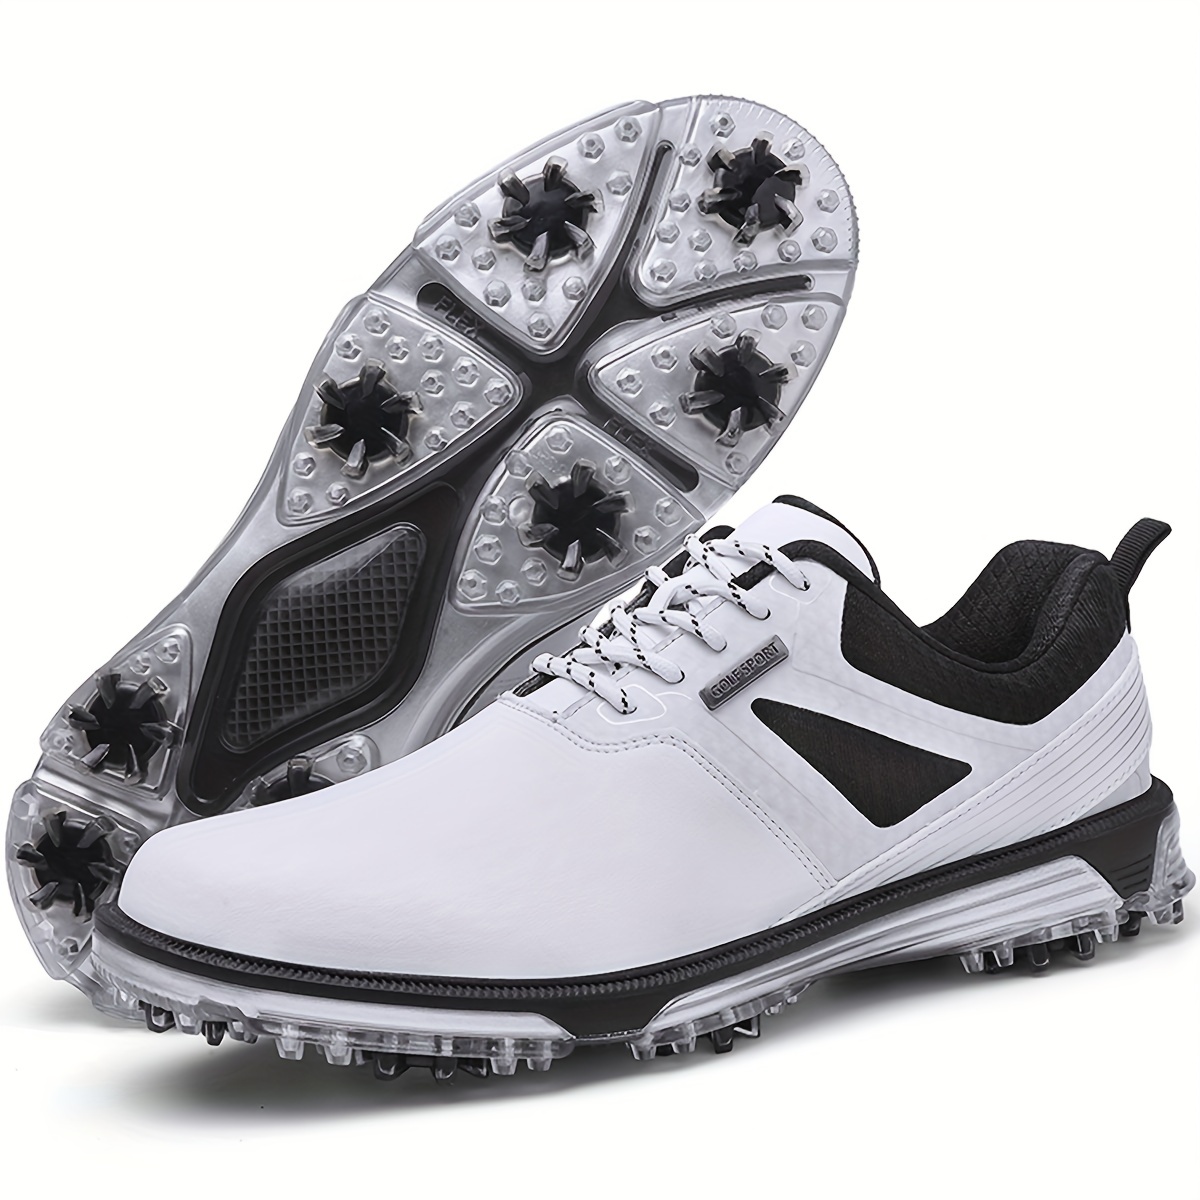 PGM – baskets de golf respirantes à boucle rotative pour femmes, chaussures  de Golf antidérapantes en microfibre étanche avec laçage automatique